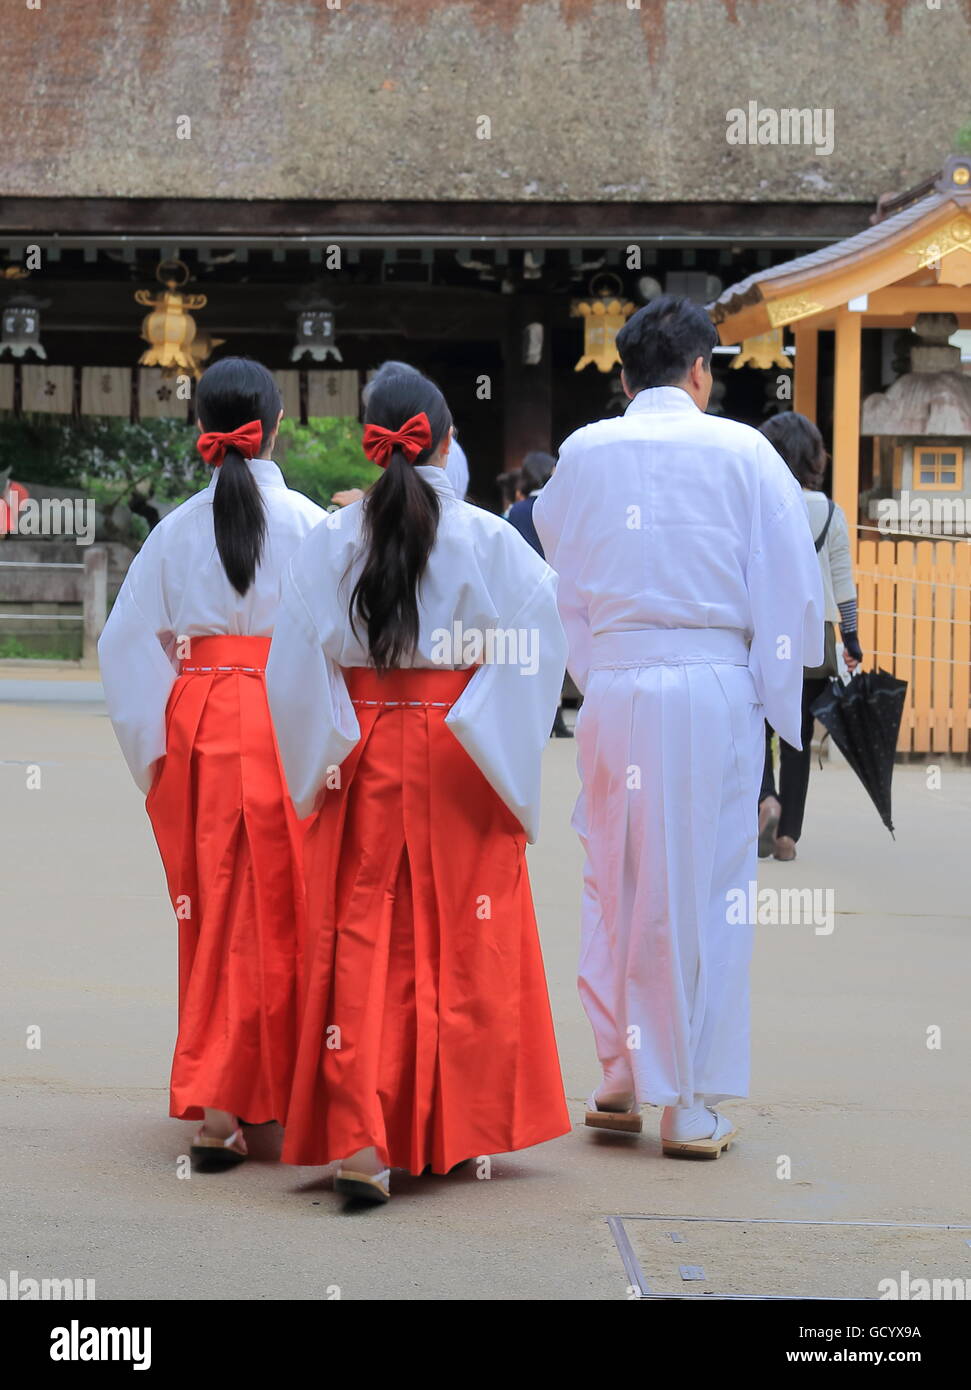 Miko, japanischem Shrine Maiden arbeitest du Kitano Tenmangu Schrein in Kyoto Japan. Stockfoto